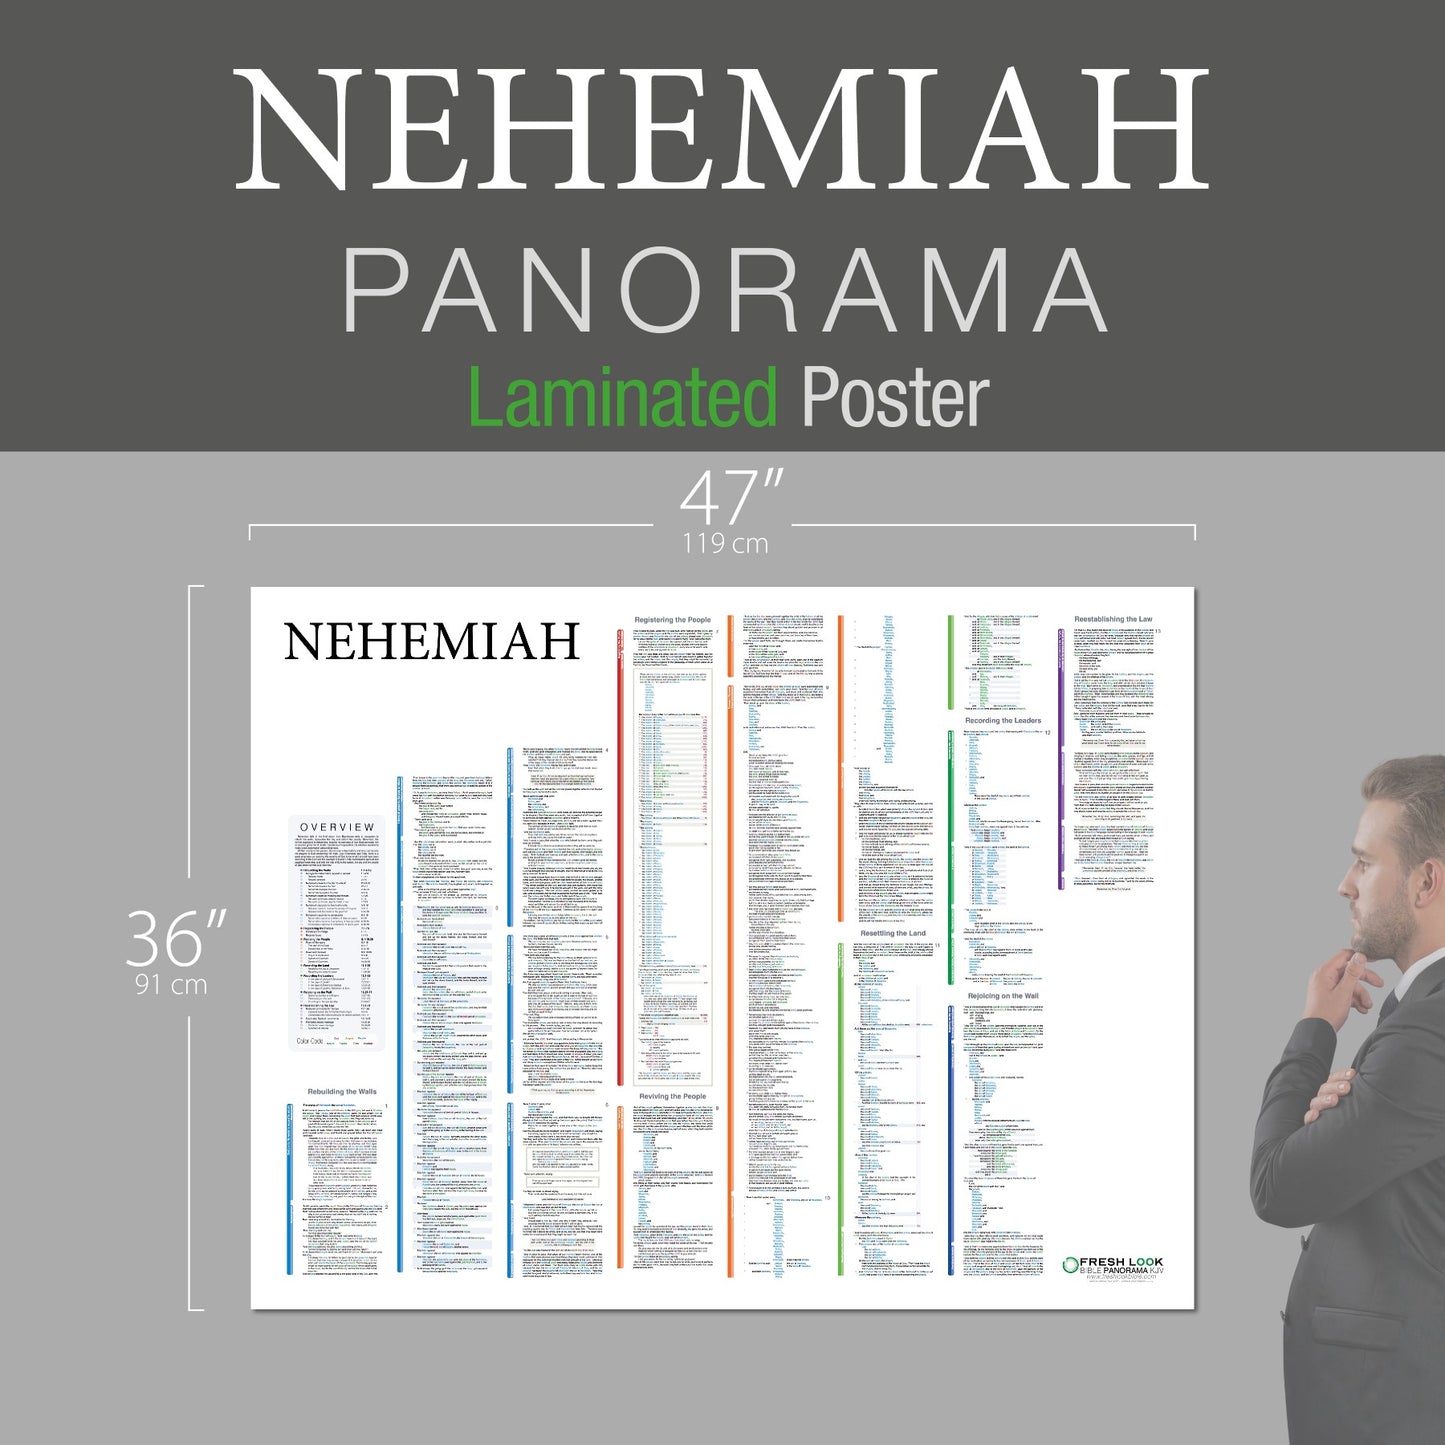 Nehemiah Panorama Laminated